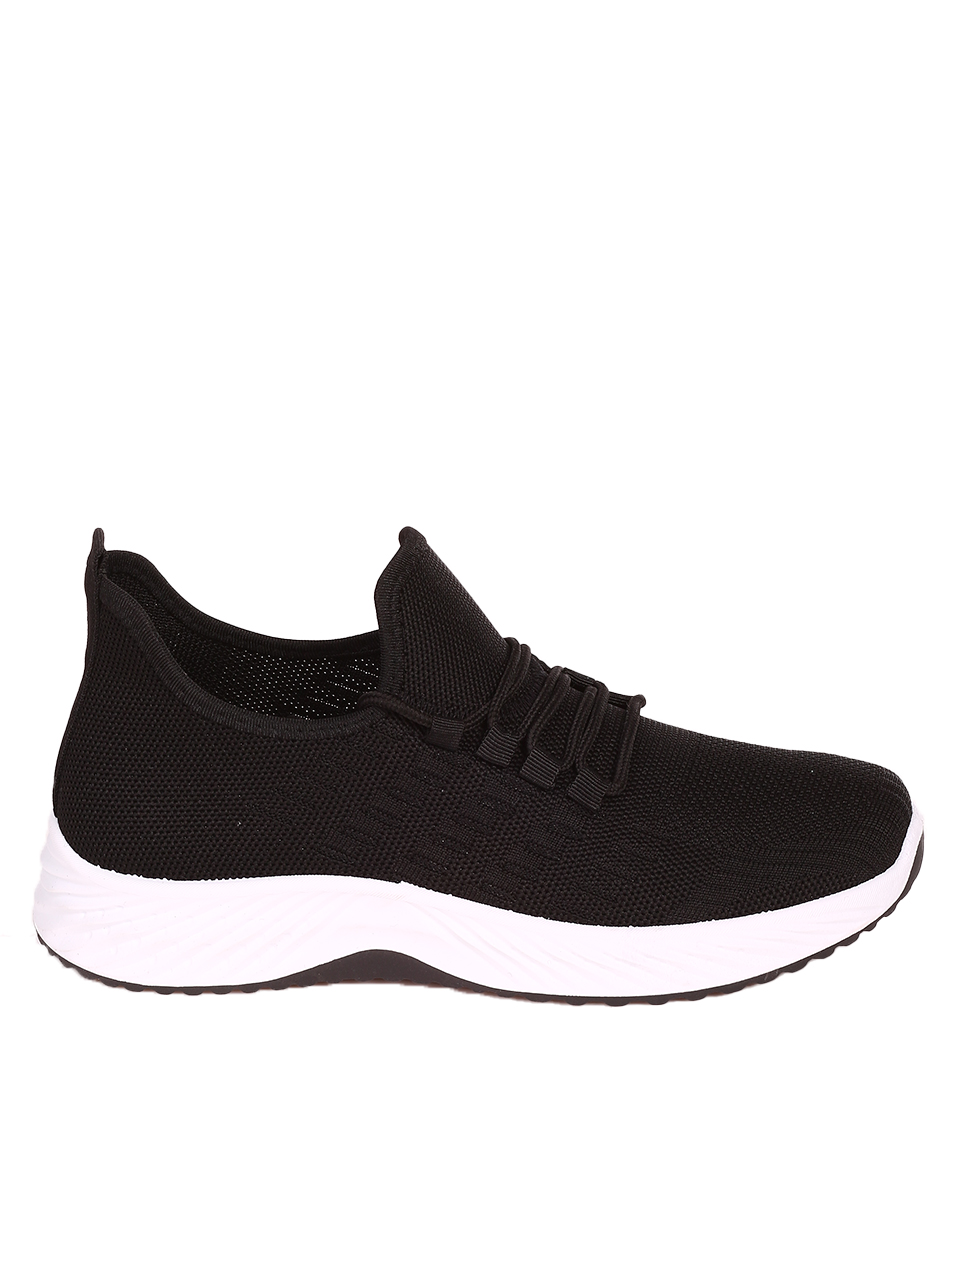 Ежедневни мъжки комфортни обувки в черно 7U-23216 black